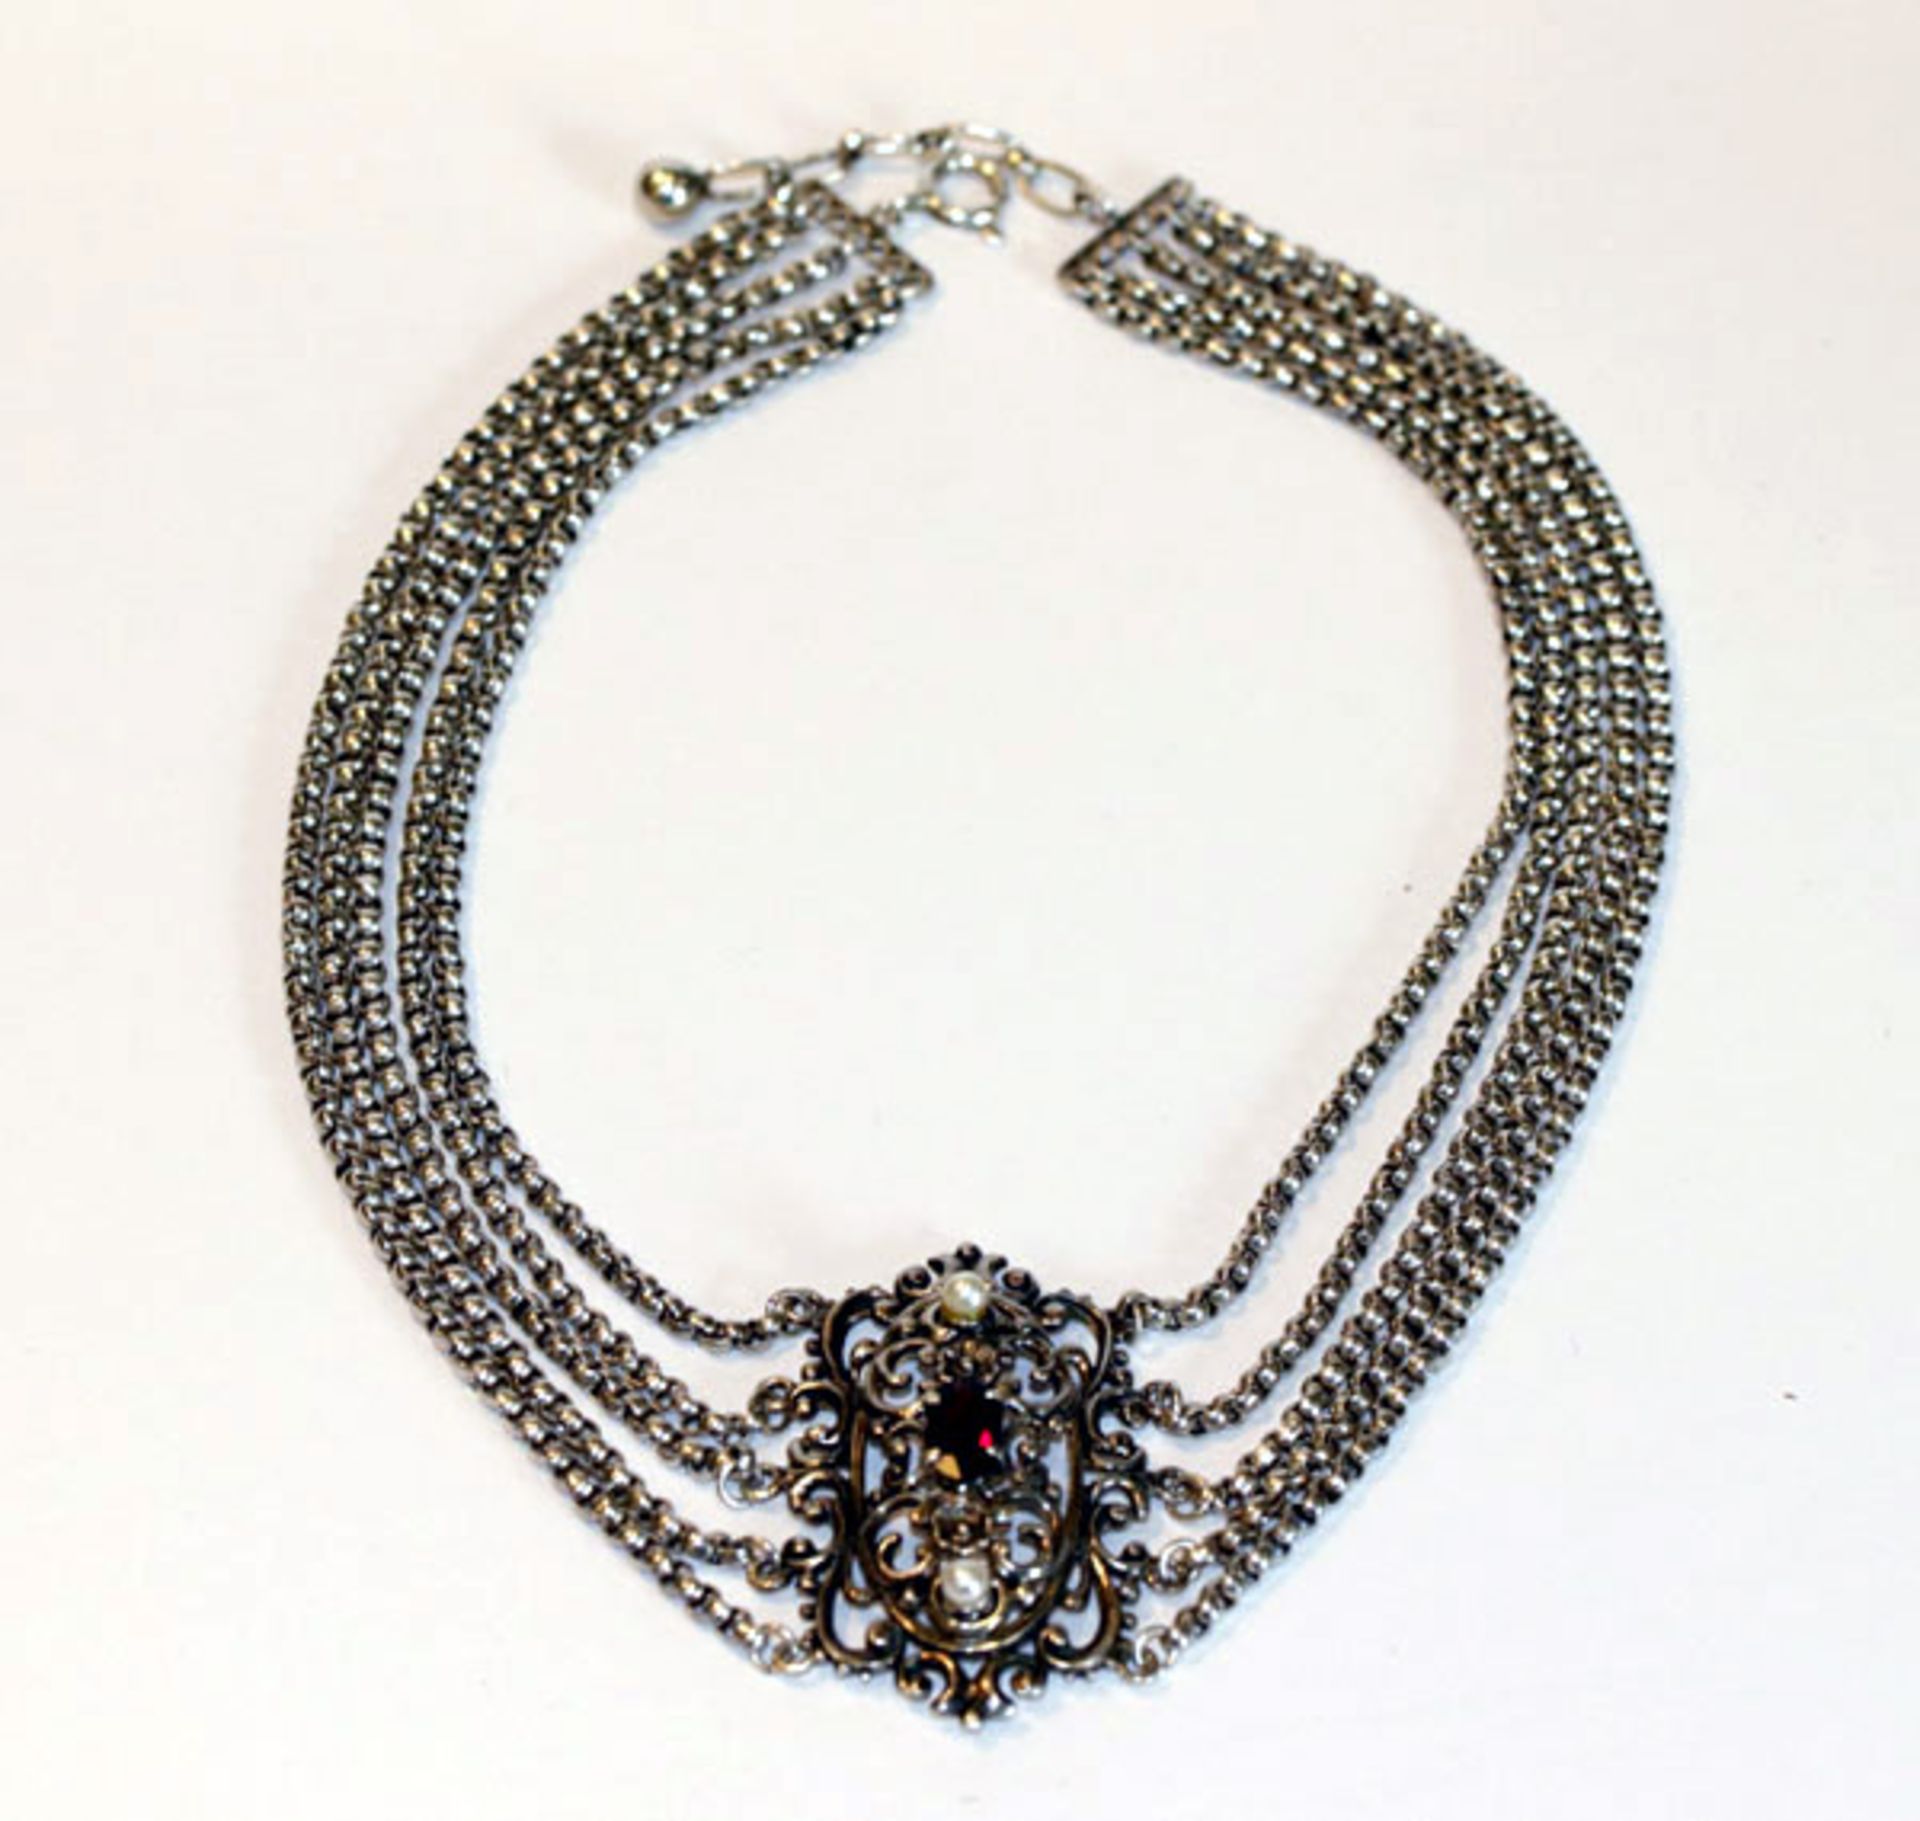 Kropfkette, 835 Silber, 5-reihig mit Granat und 2 Perlen, L 32 cm